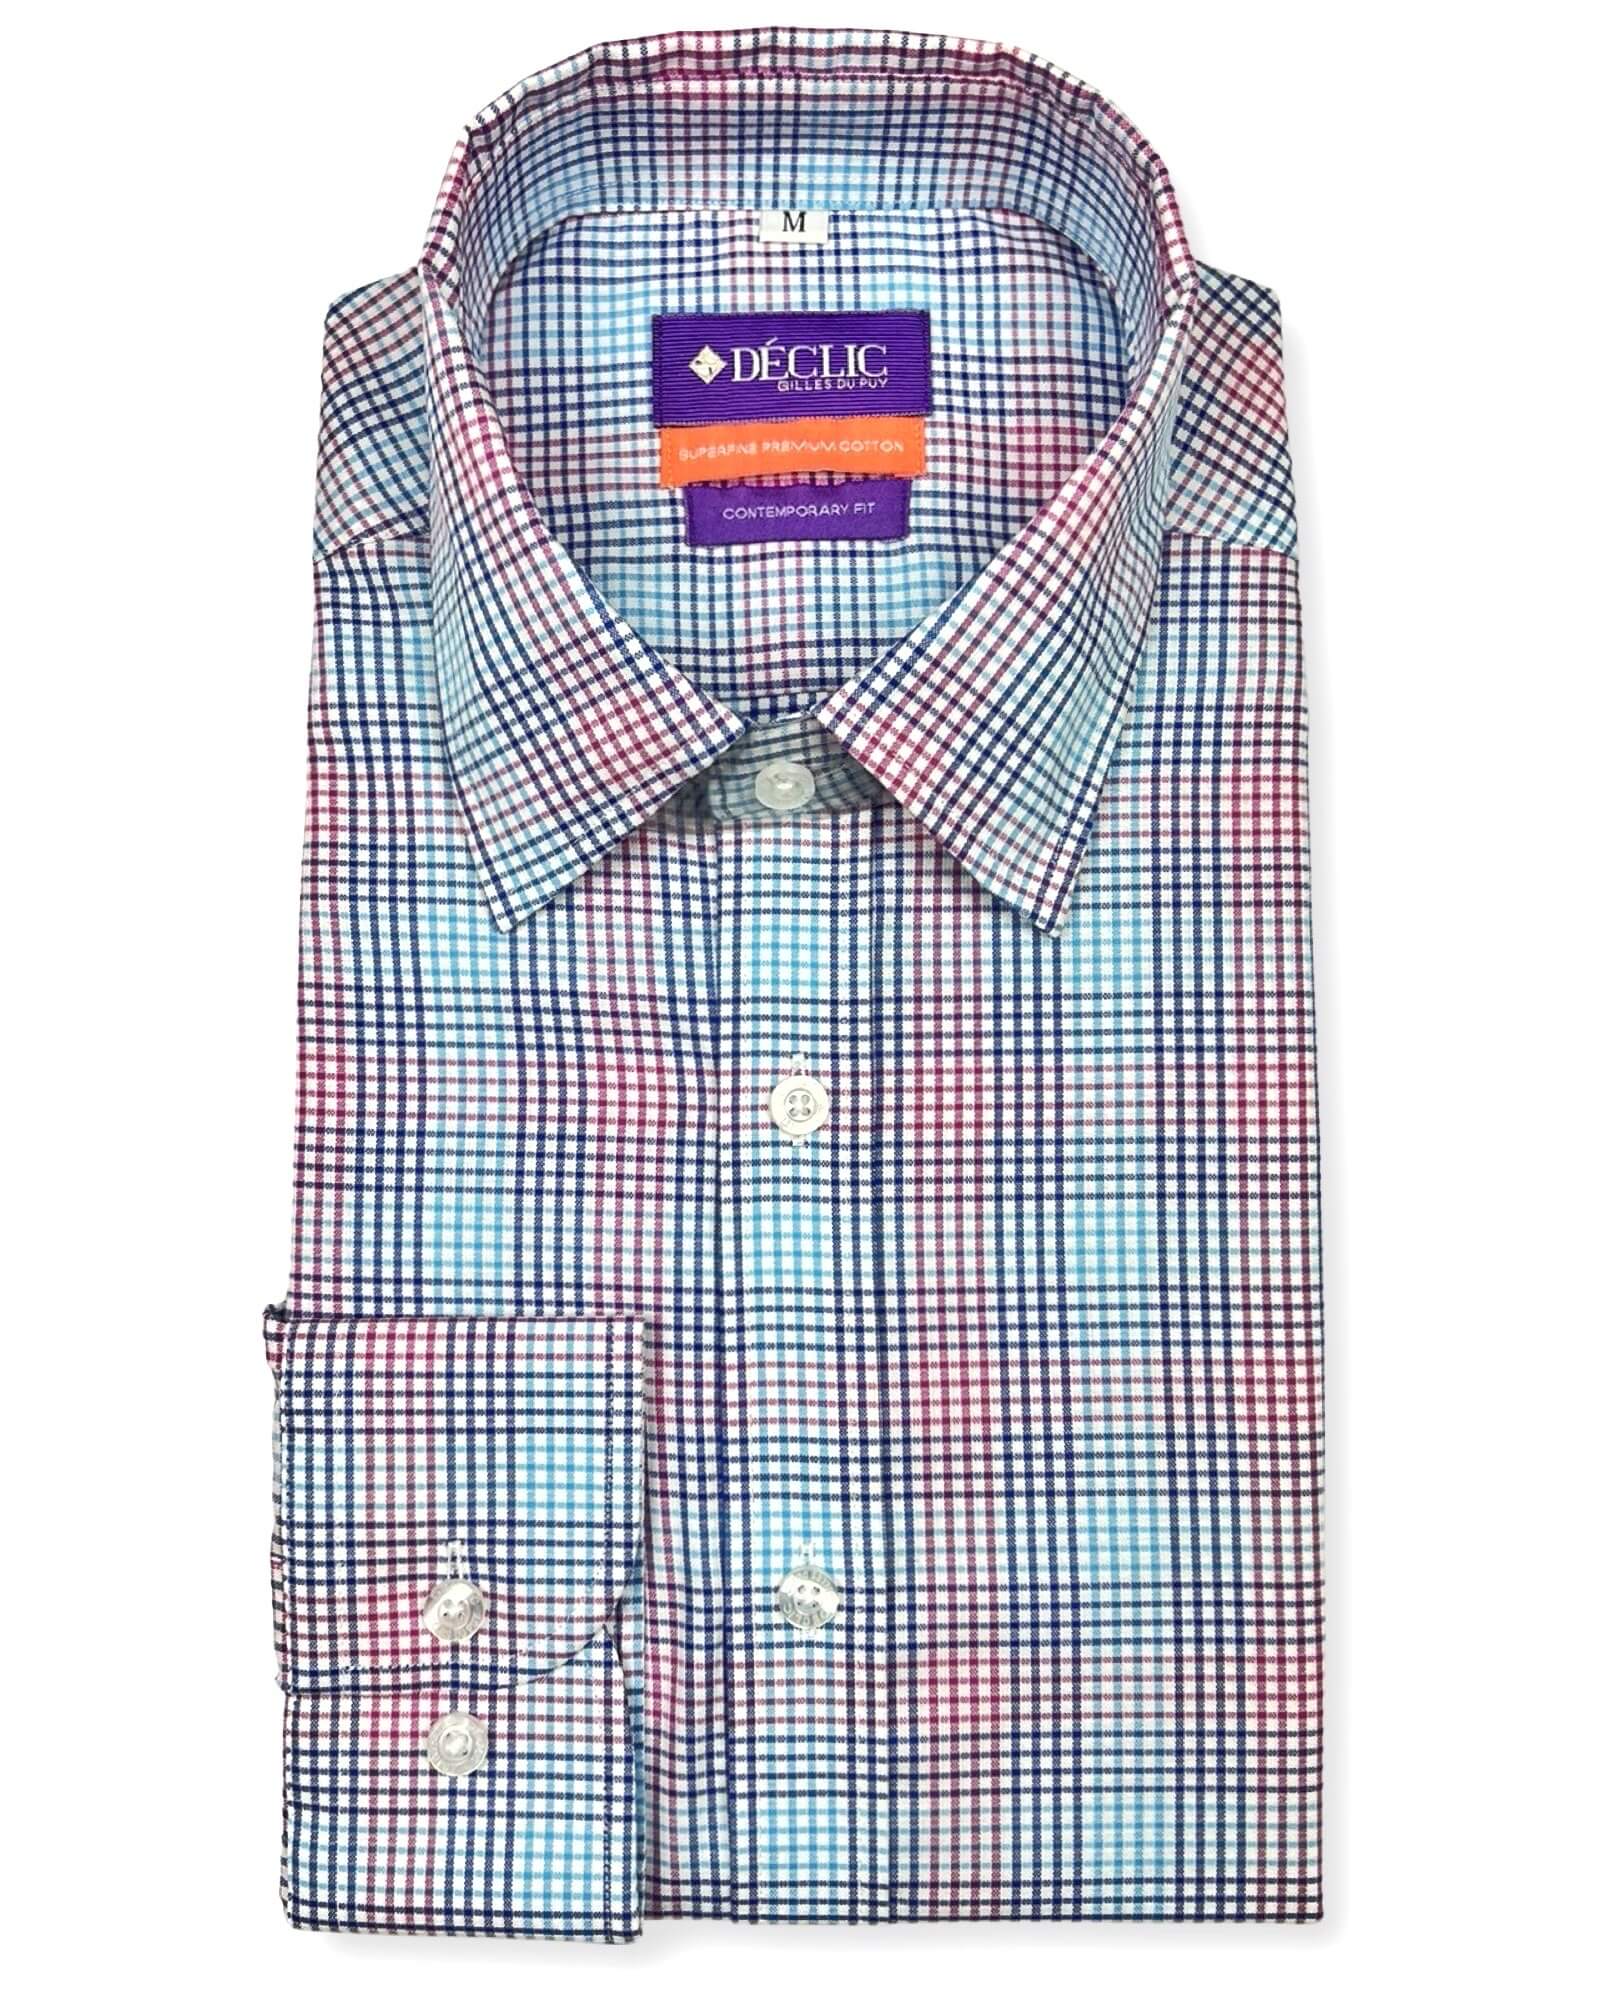 DÉCLIC Reymond Check Shirt - Assorted